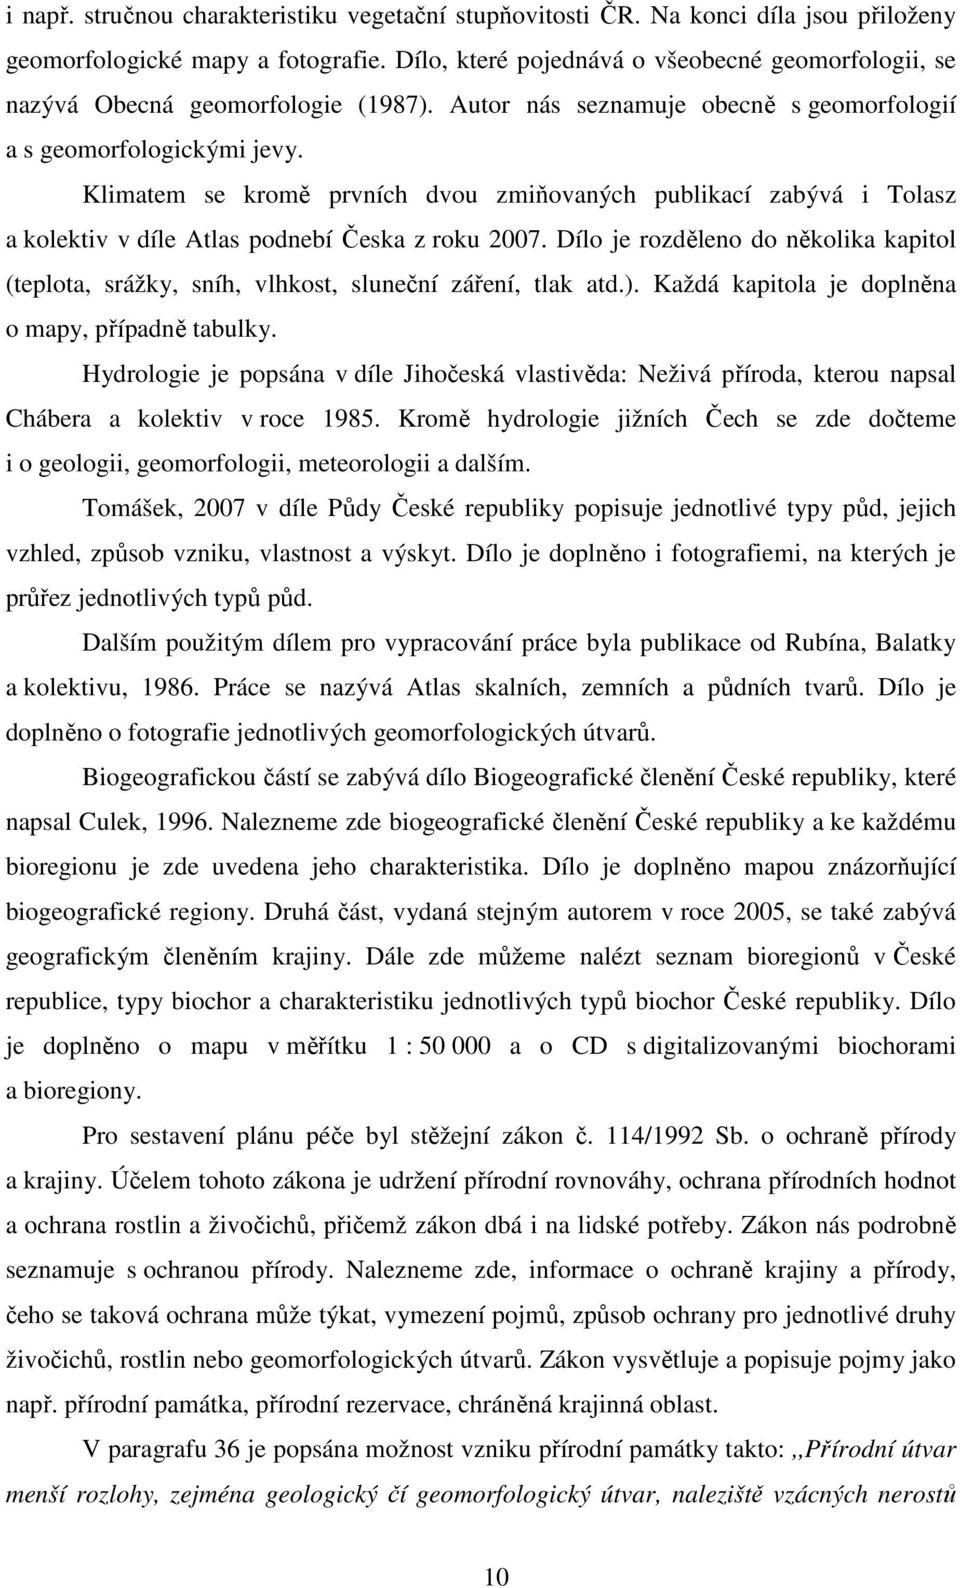 Klimatem se kromě prvních dvou zmiňovaných publikací zabývá i Tolasz a kolektiv v díle Atlas podnebí Česka z roku 2007.